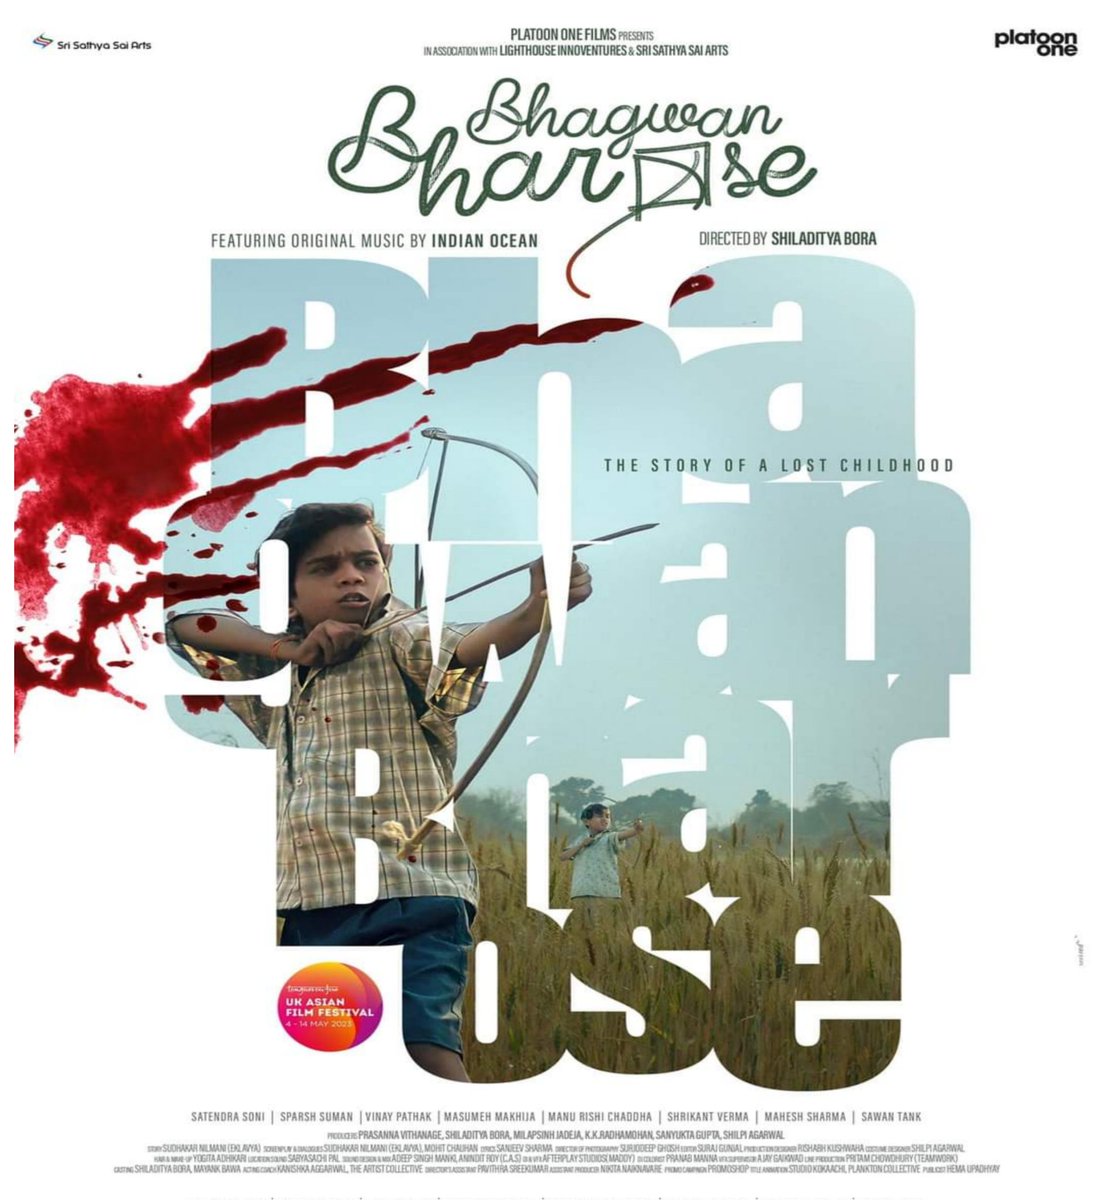 SHILADITYA BORA’S DIRECTORIAL DEBUT IS CLOSING FILM AT UK ASIAN FILM FESTIVAL… #BhagwanBharose - the directorial debut of producer #ShiladityaBora - selected as Closing Film of 25th UK Asian Film Festival in #London… #FirstLook poster…